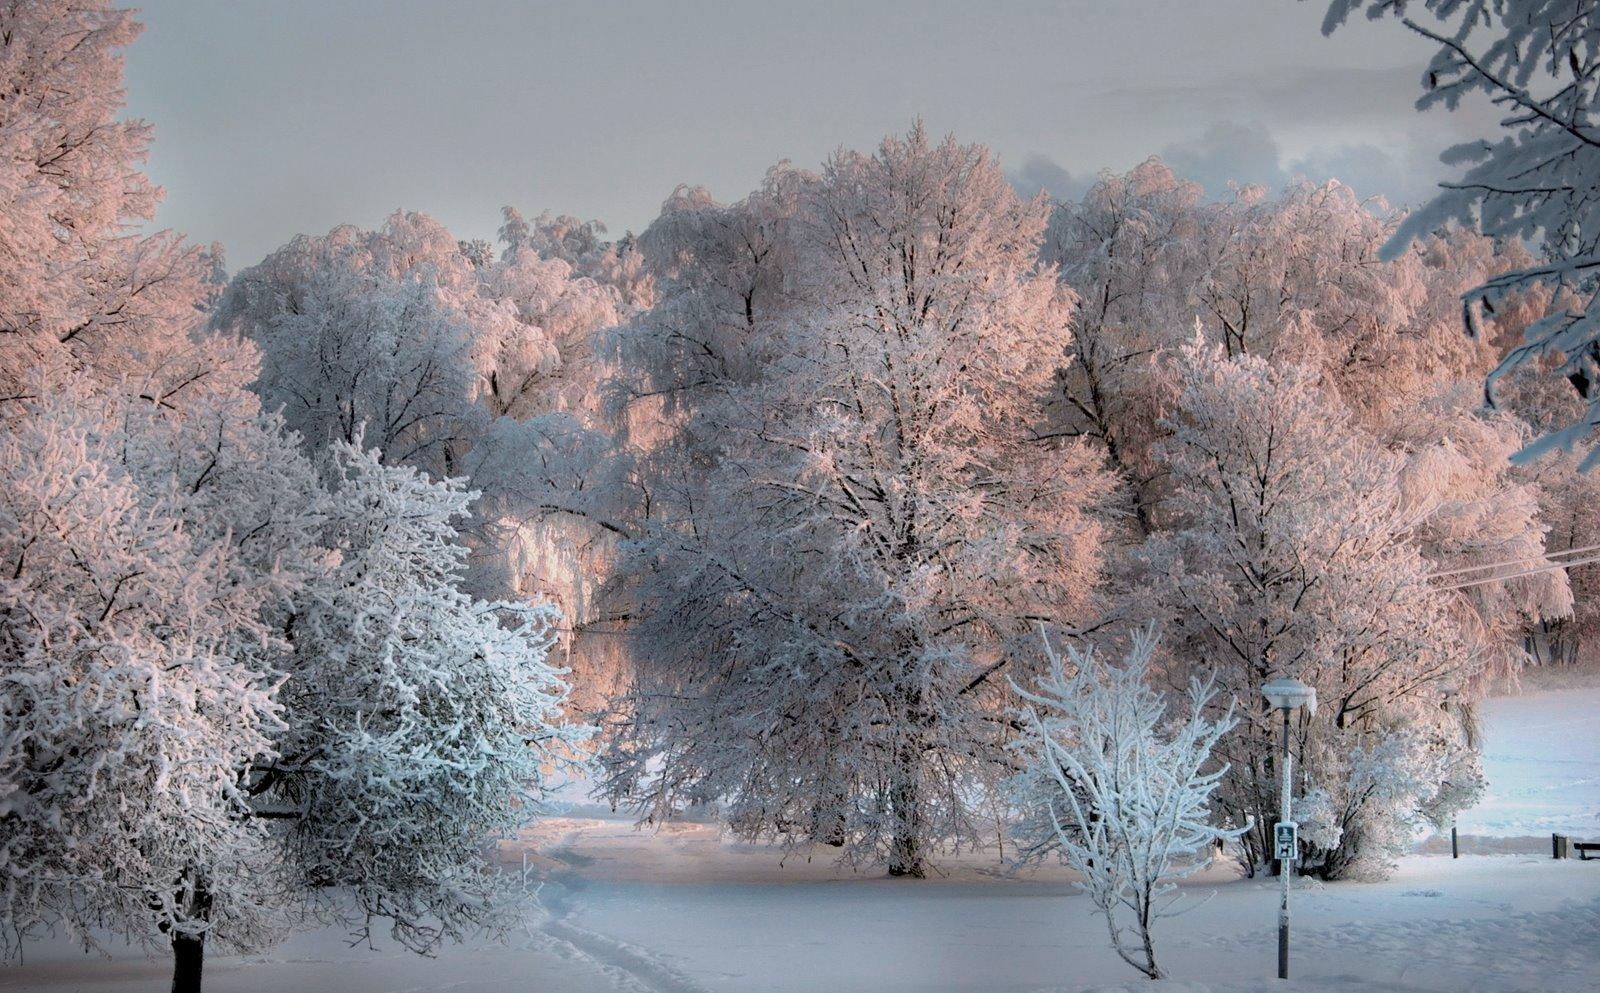 Ночь зима снег природа | Wallpapers.ai